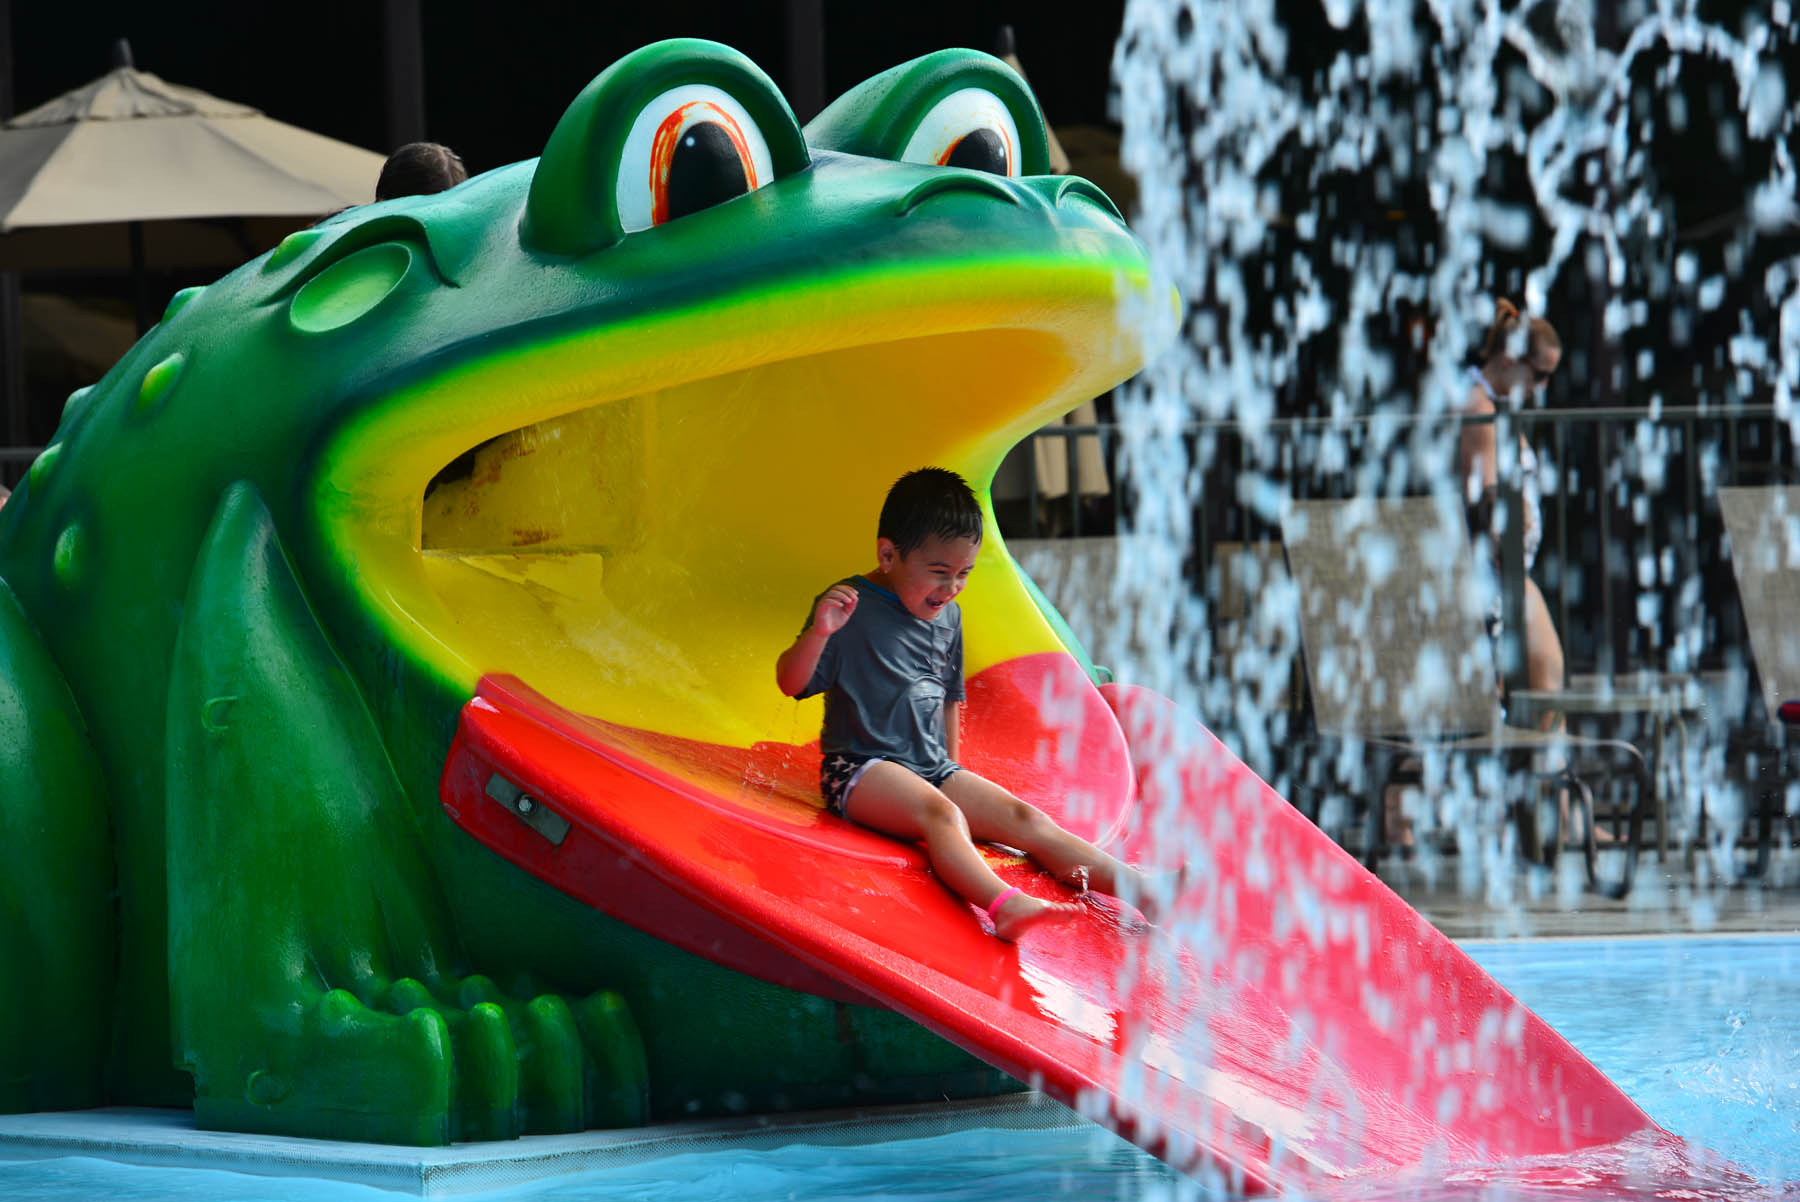 Child sliding down splash pool frog slide.